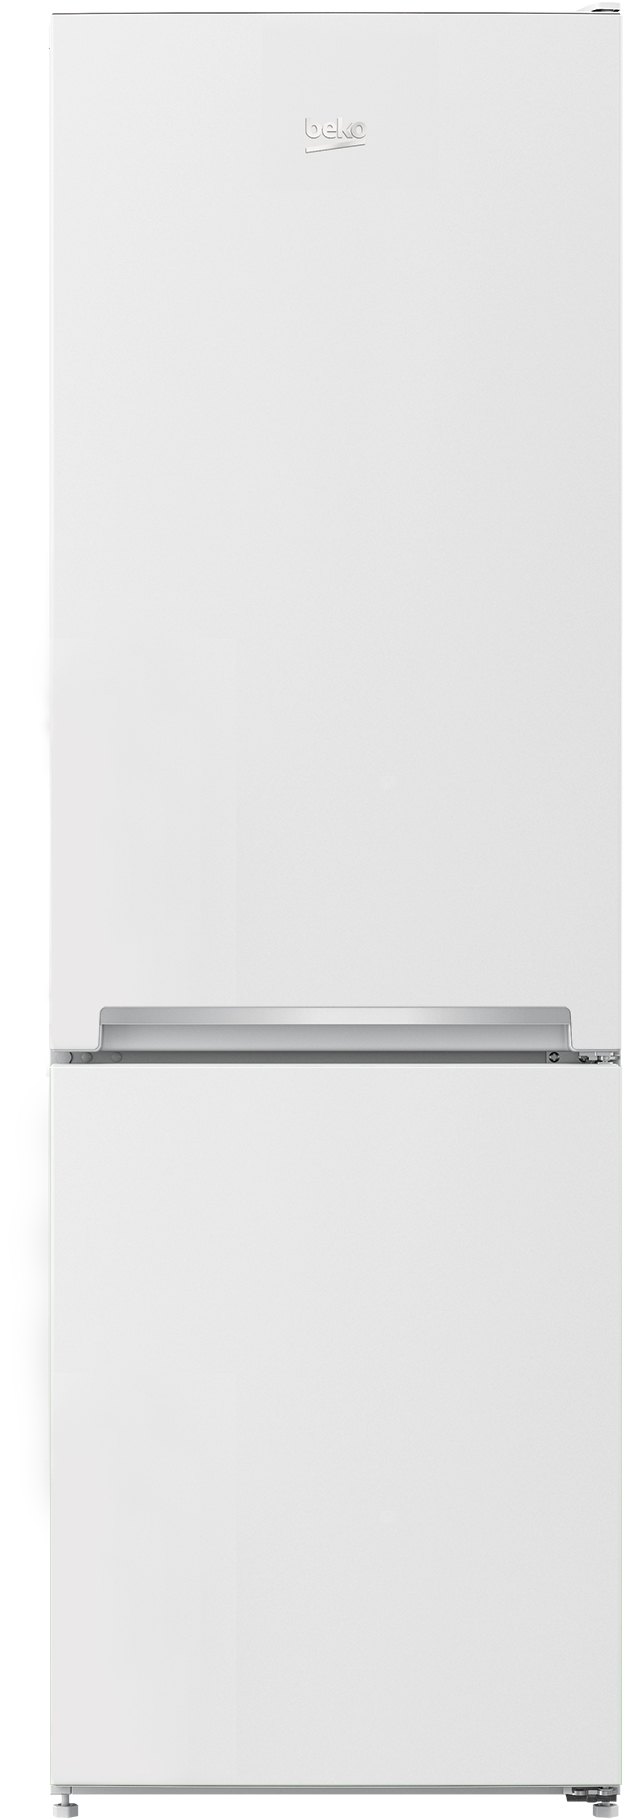 Холодильник Beko RCSA270K20W в интернет-магазине, главное фото